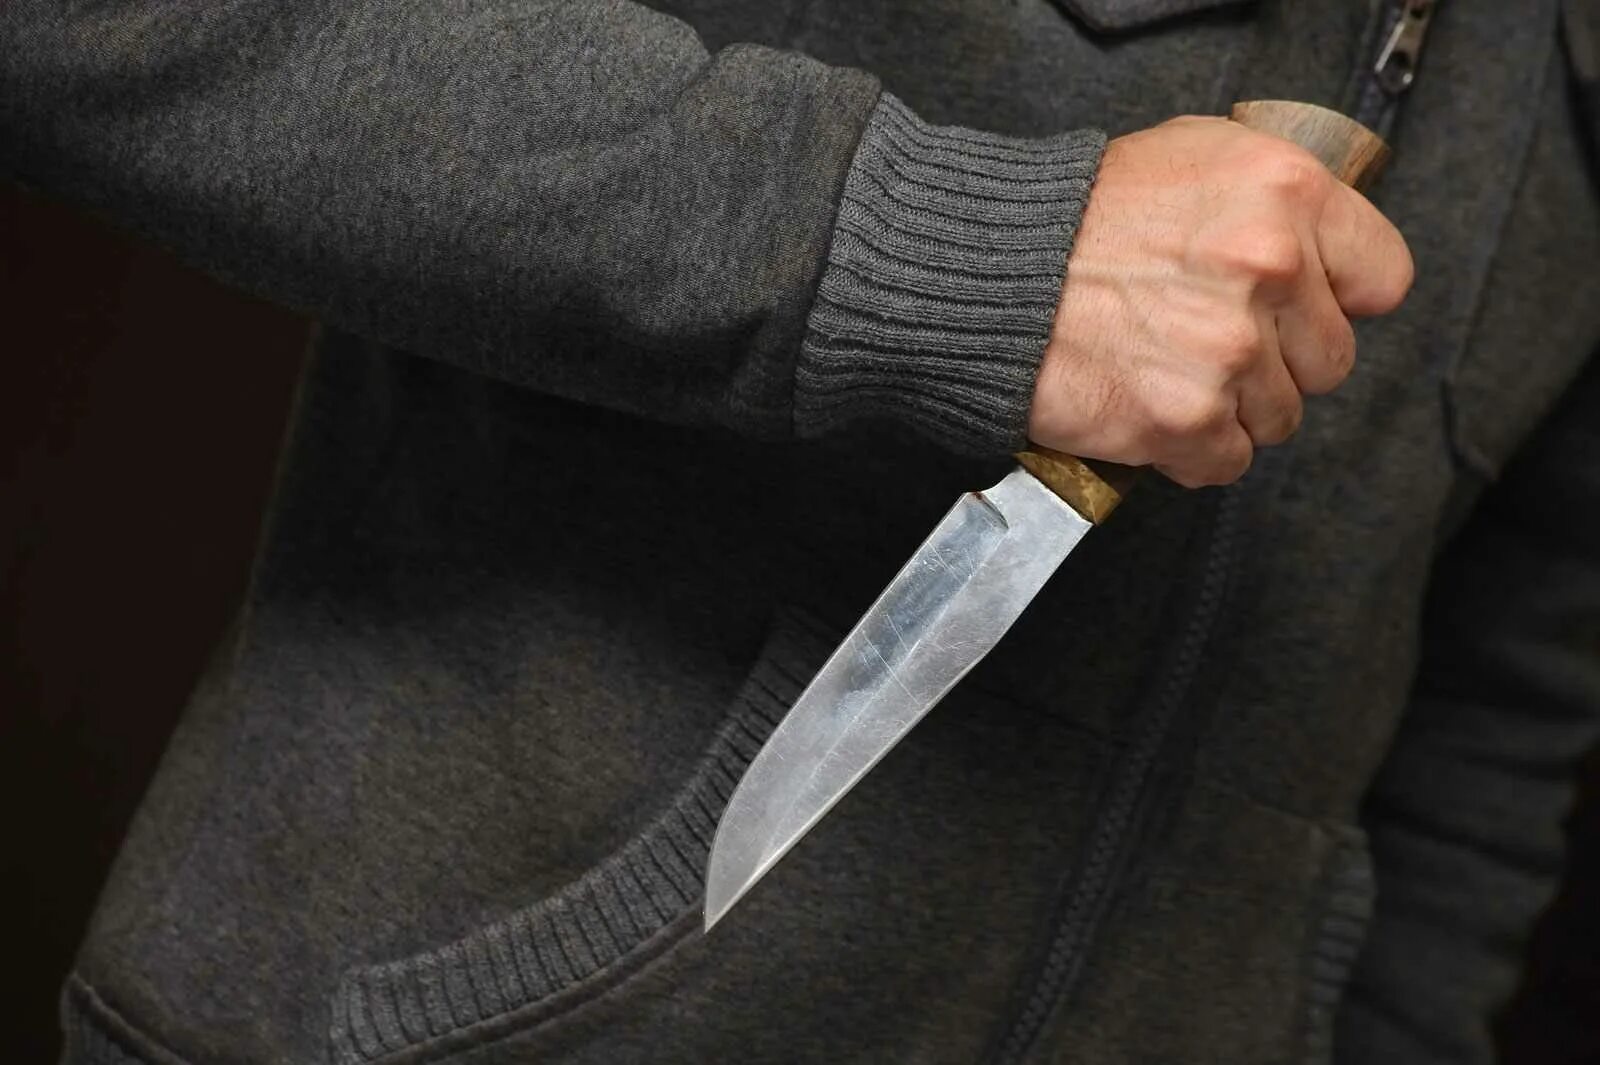 Угроза убийством лет. Мужчинская рука с ножом.